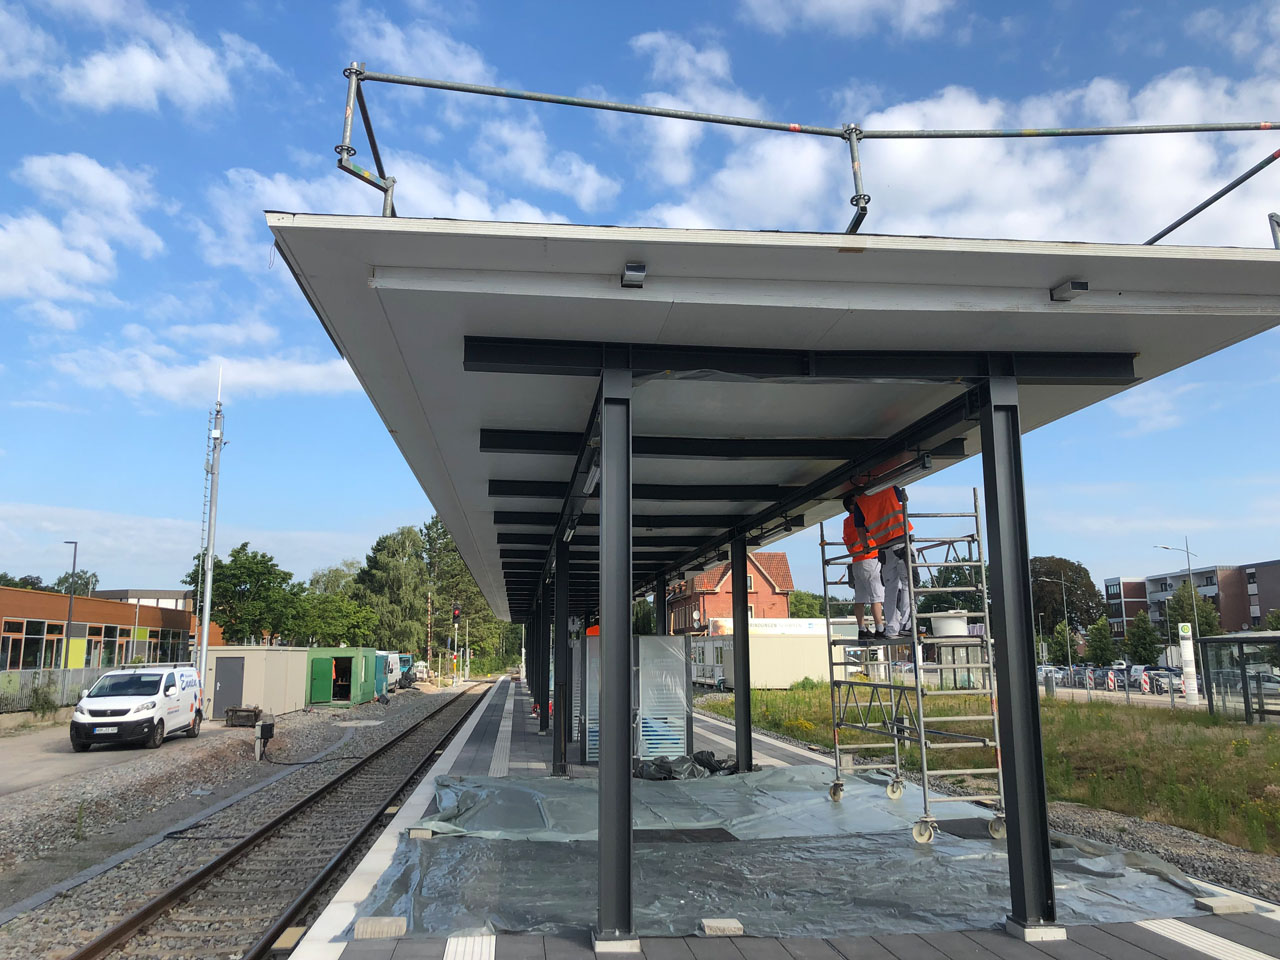 Bahnhof - Malerfachbetrieb Ennen in Nordhorn